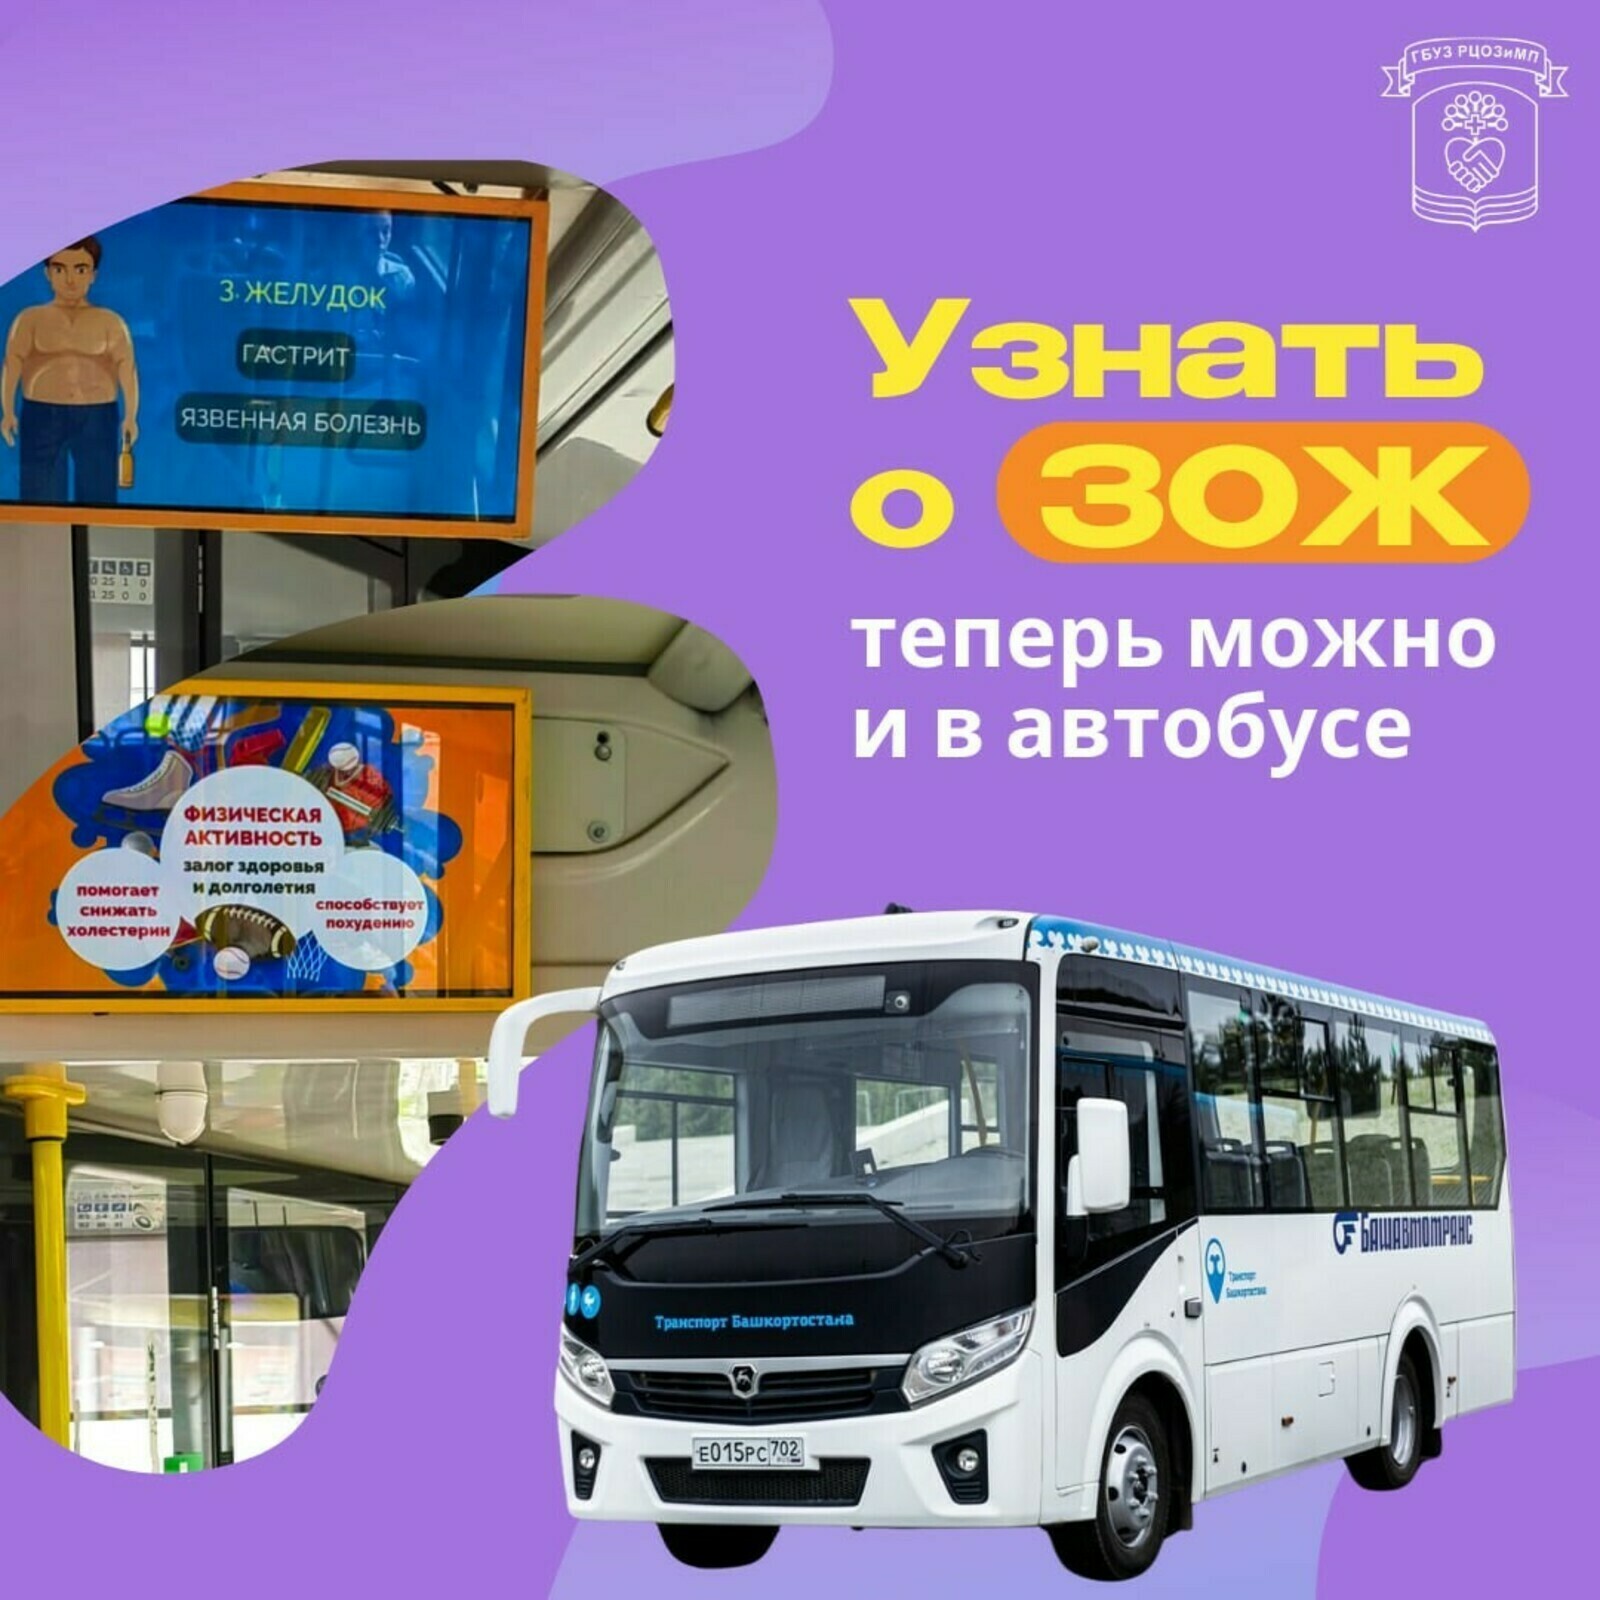 В Башкортостане узнать о здоровом образе жизни теперь можно и в автобусе